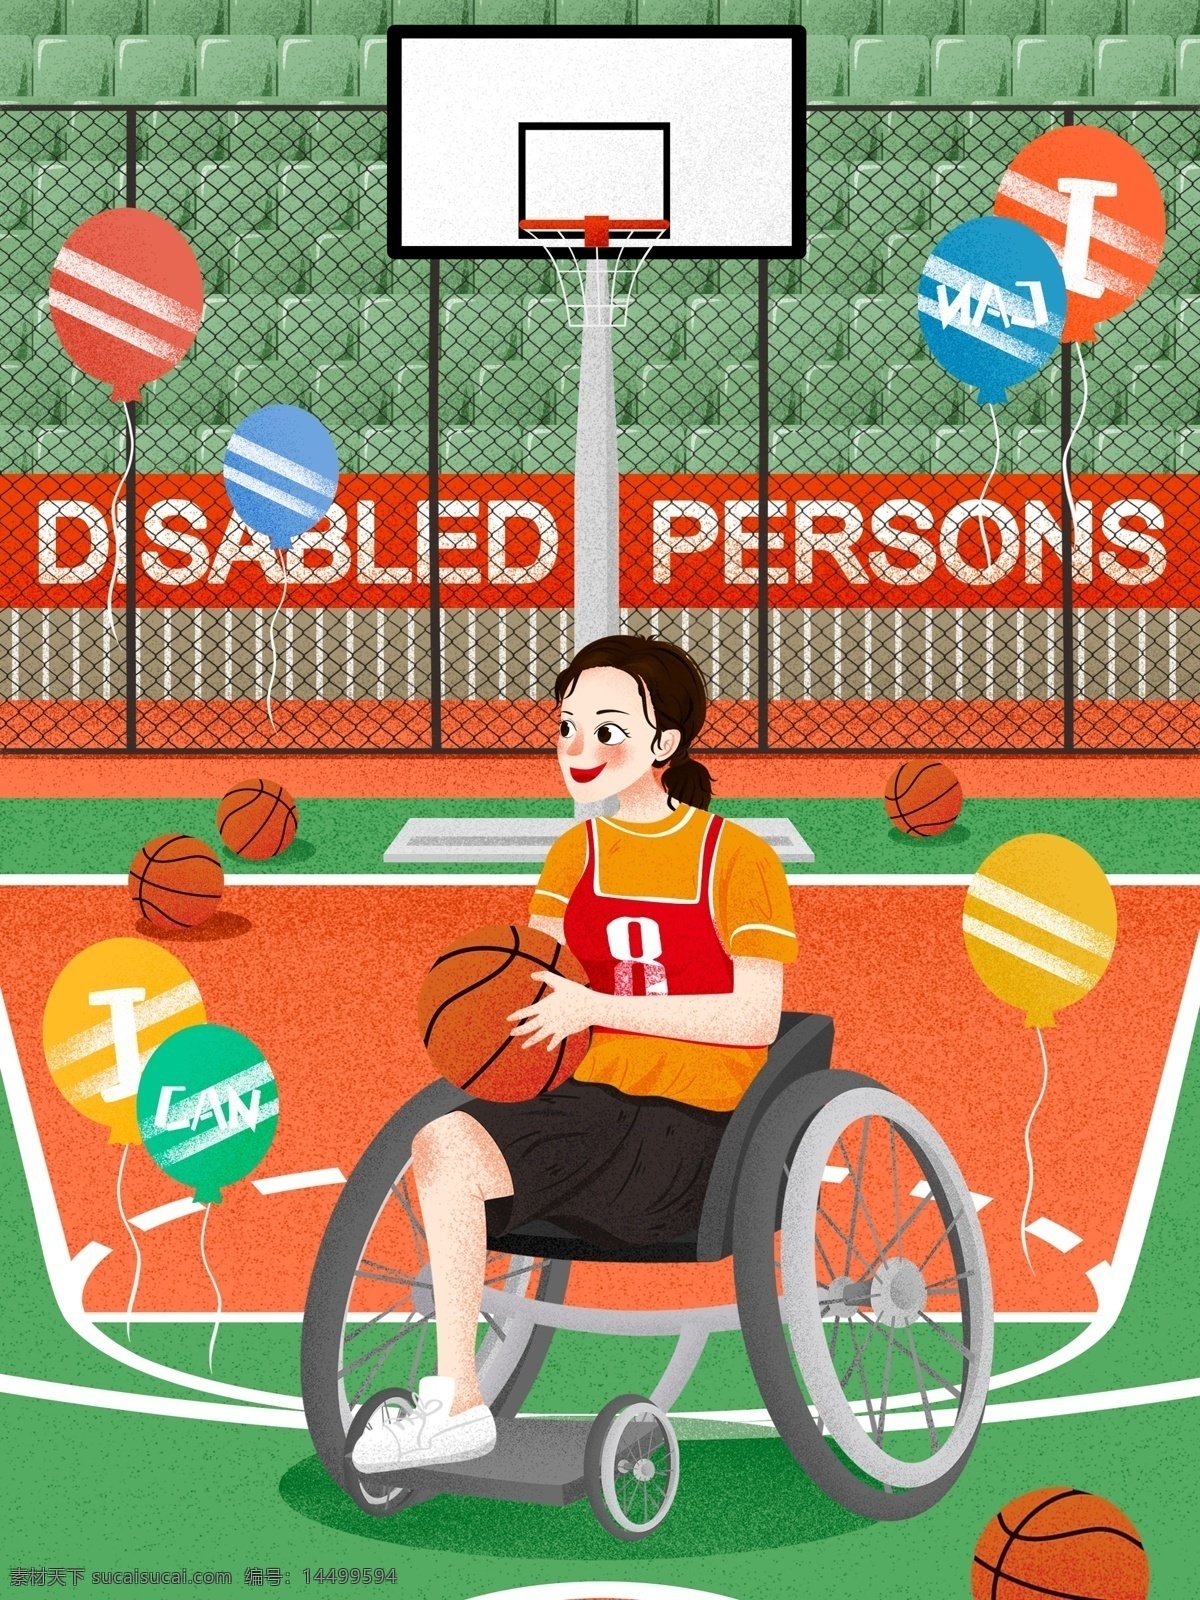 国际 残疾 人日 篮球 场上 女孩 插画 篮球场 气球 励志 激励 国际残疾人日 残疾人日 残疾人 残疾女孩 球框 打篮球 身残志不残 轮椅